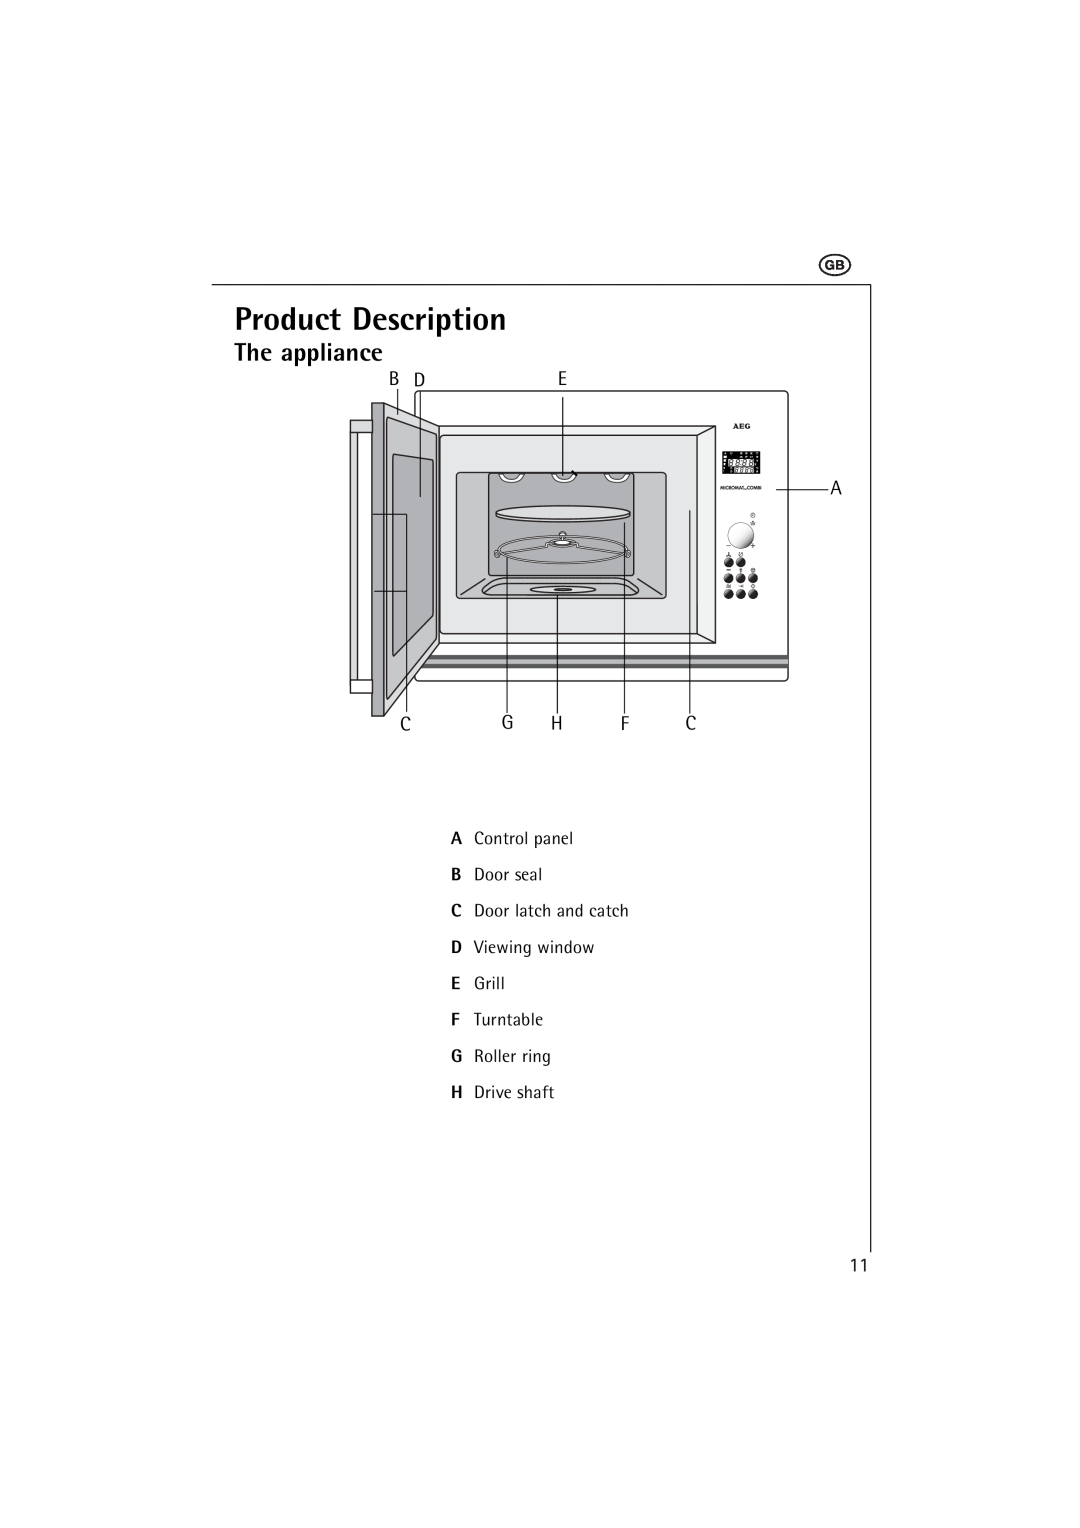 AEG MCC 663 instruction manual Product Description, The appliance, B De A 